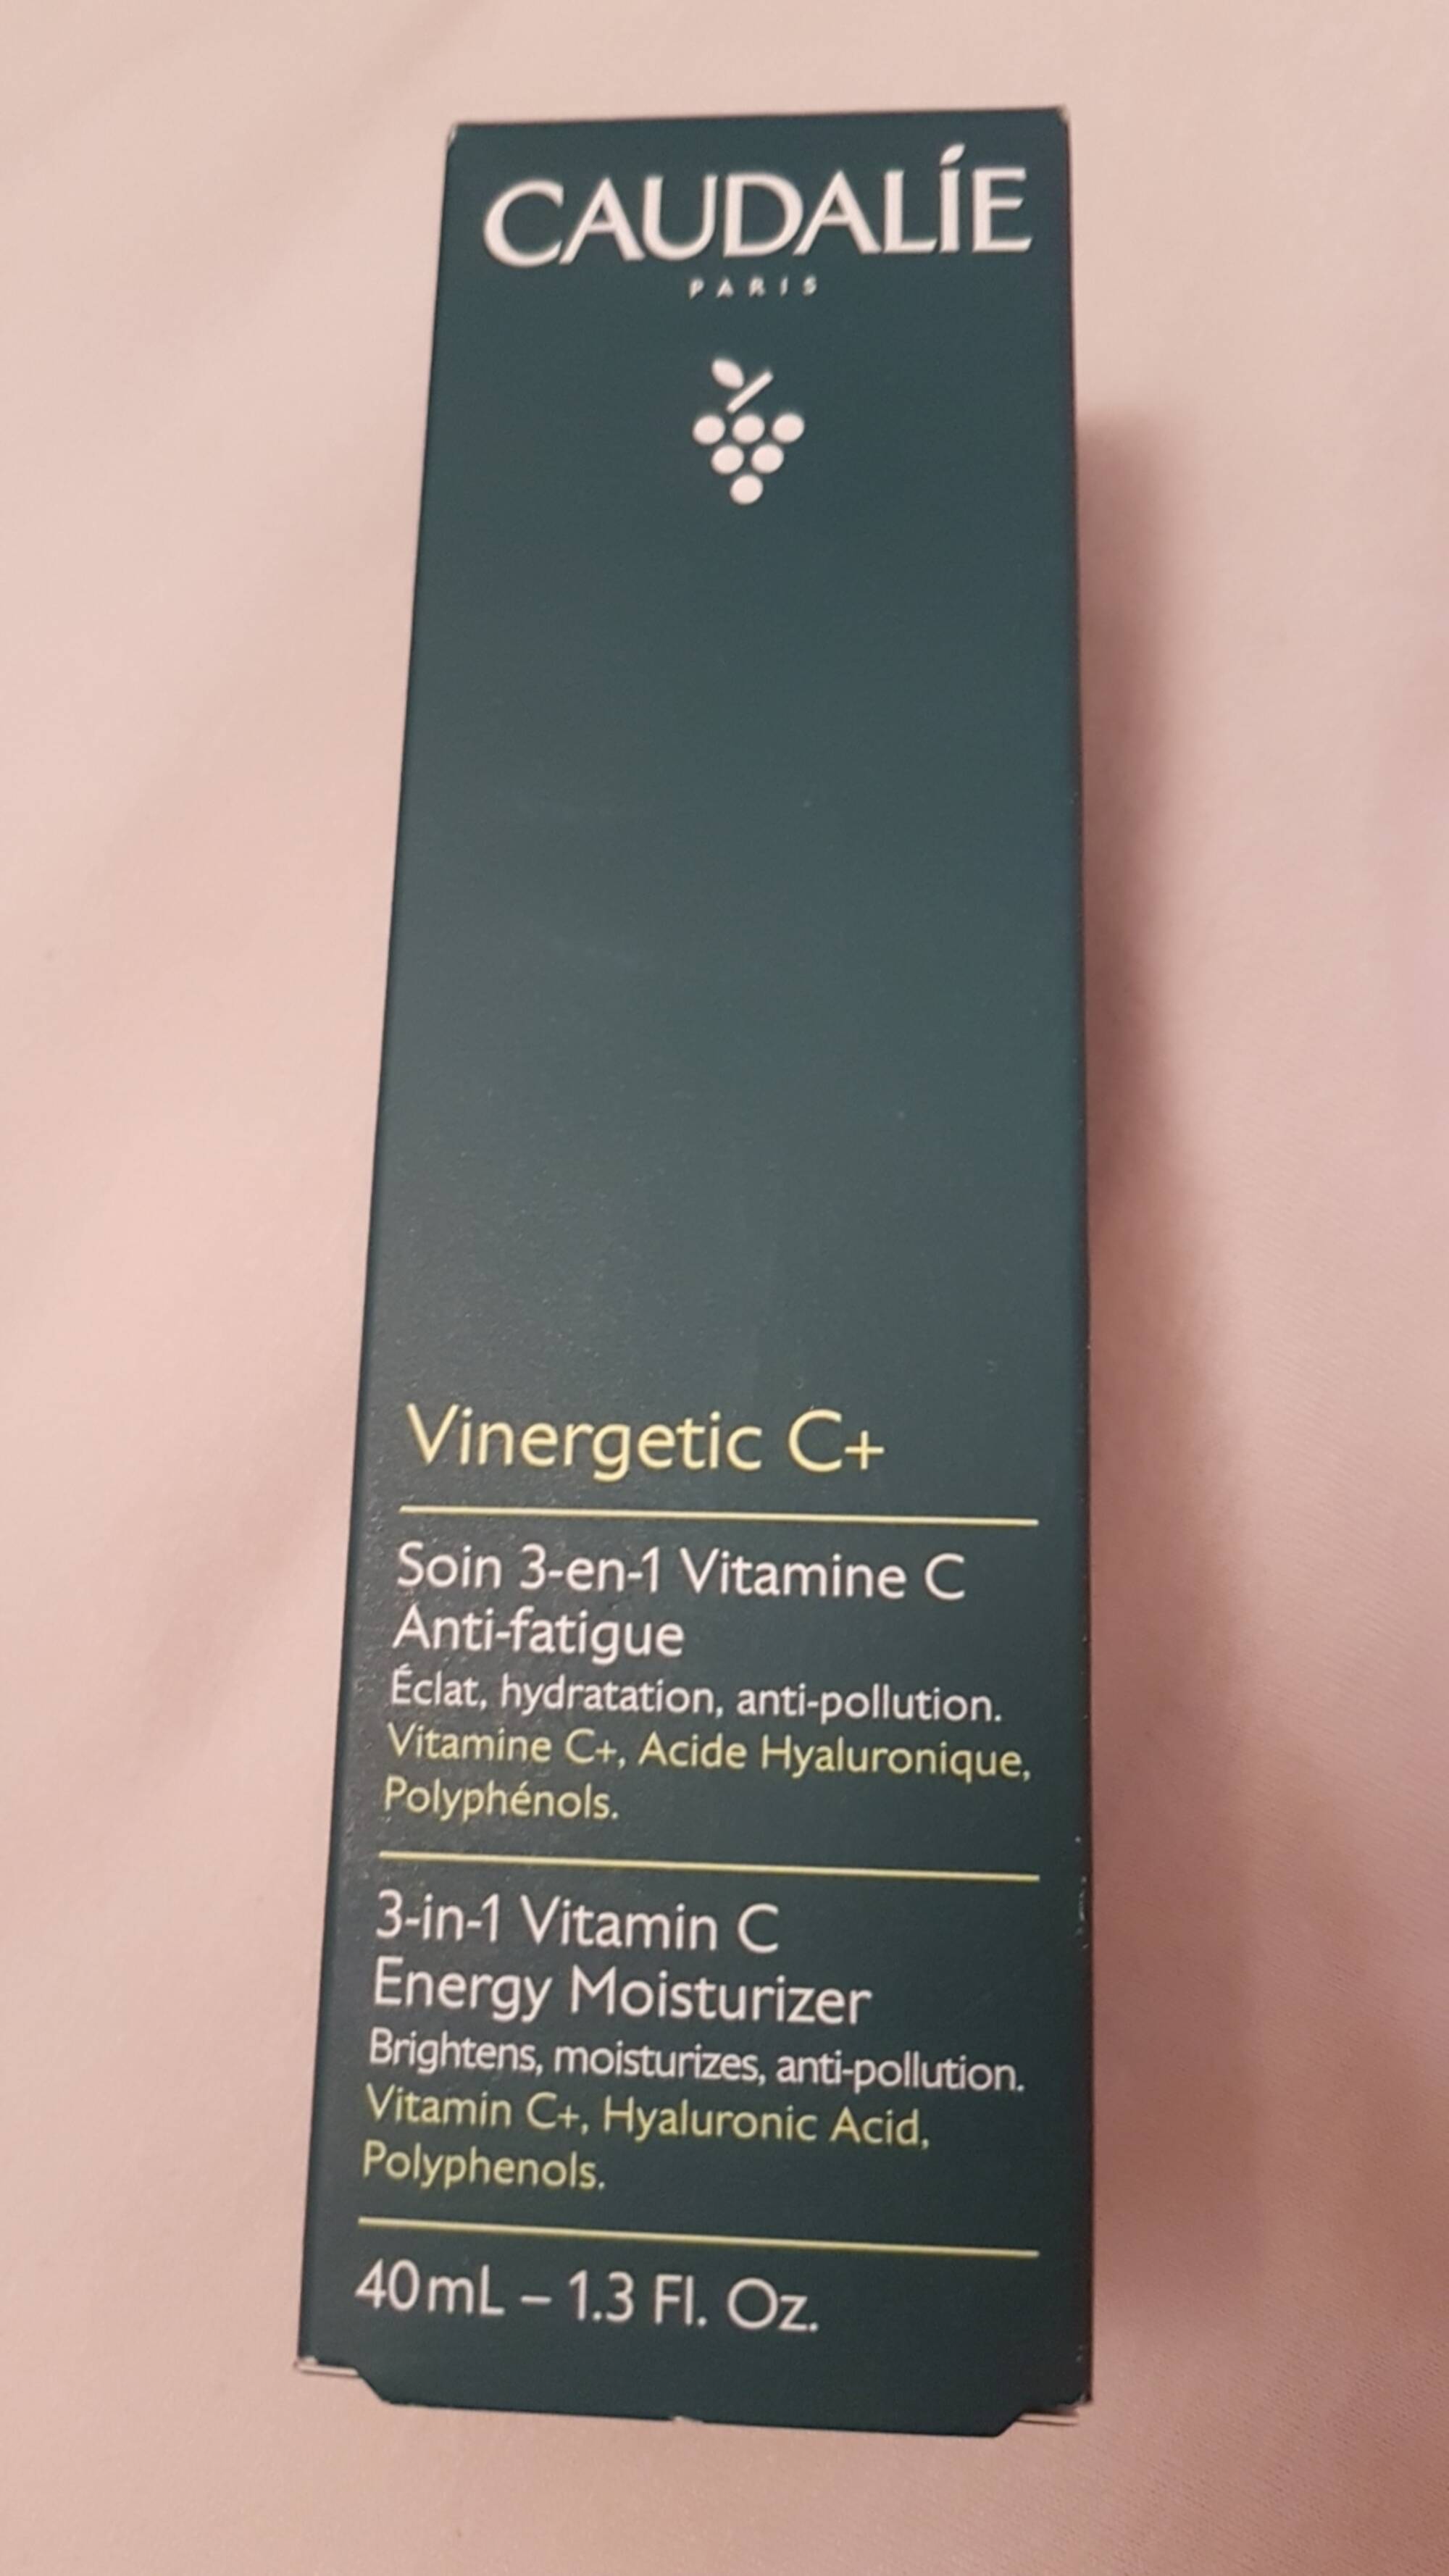 CAUDALIE - Vinergetic C+ - Soin 3-en-1 vitamine c anti-fatigue